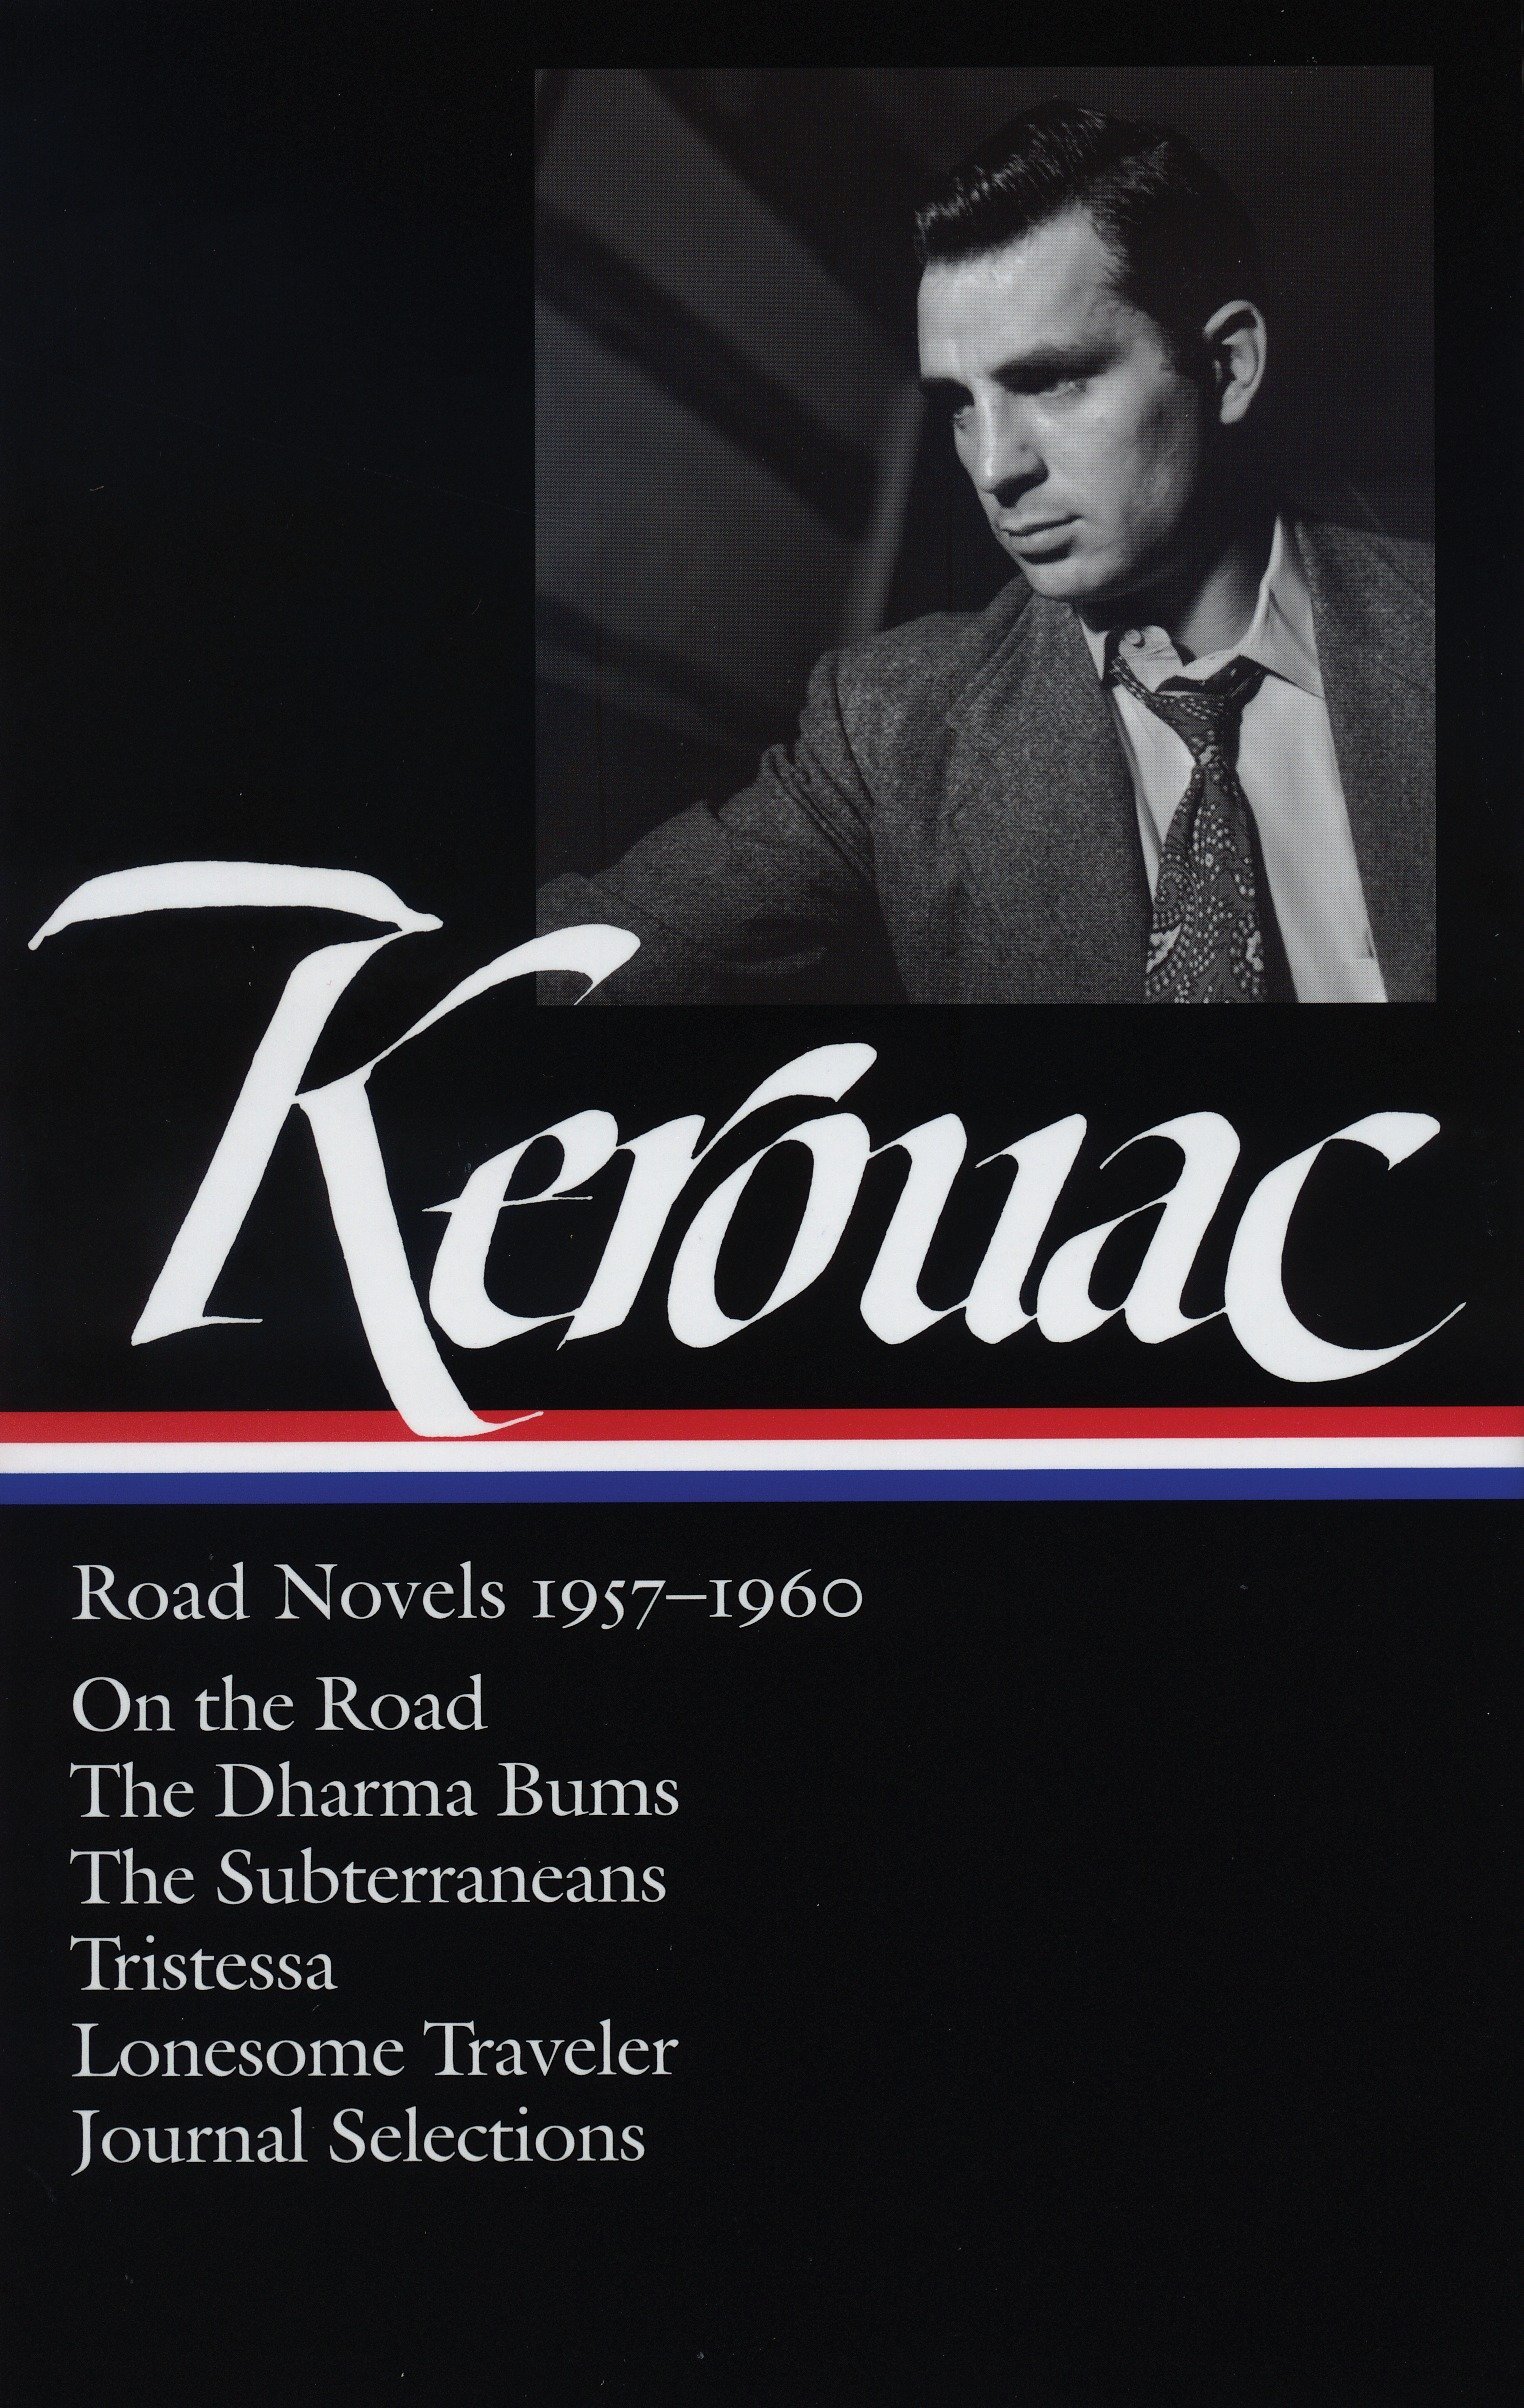 Road novels 1957-1960